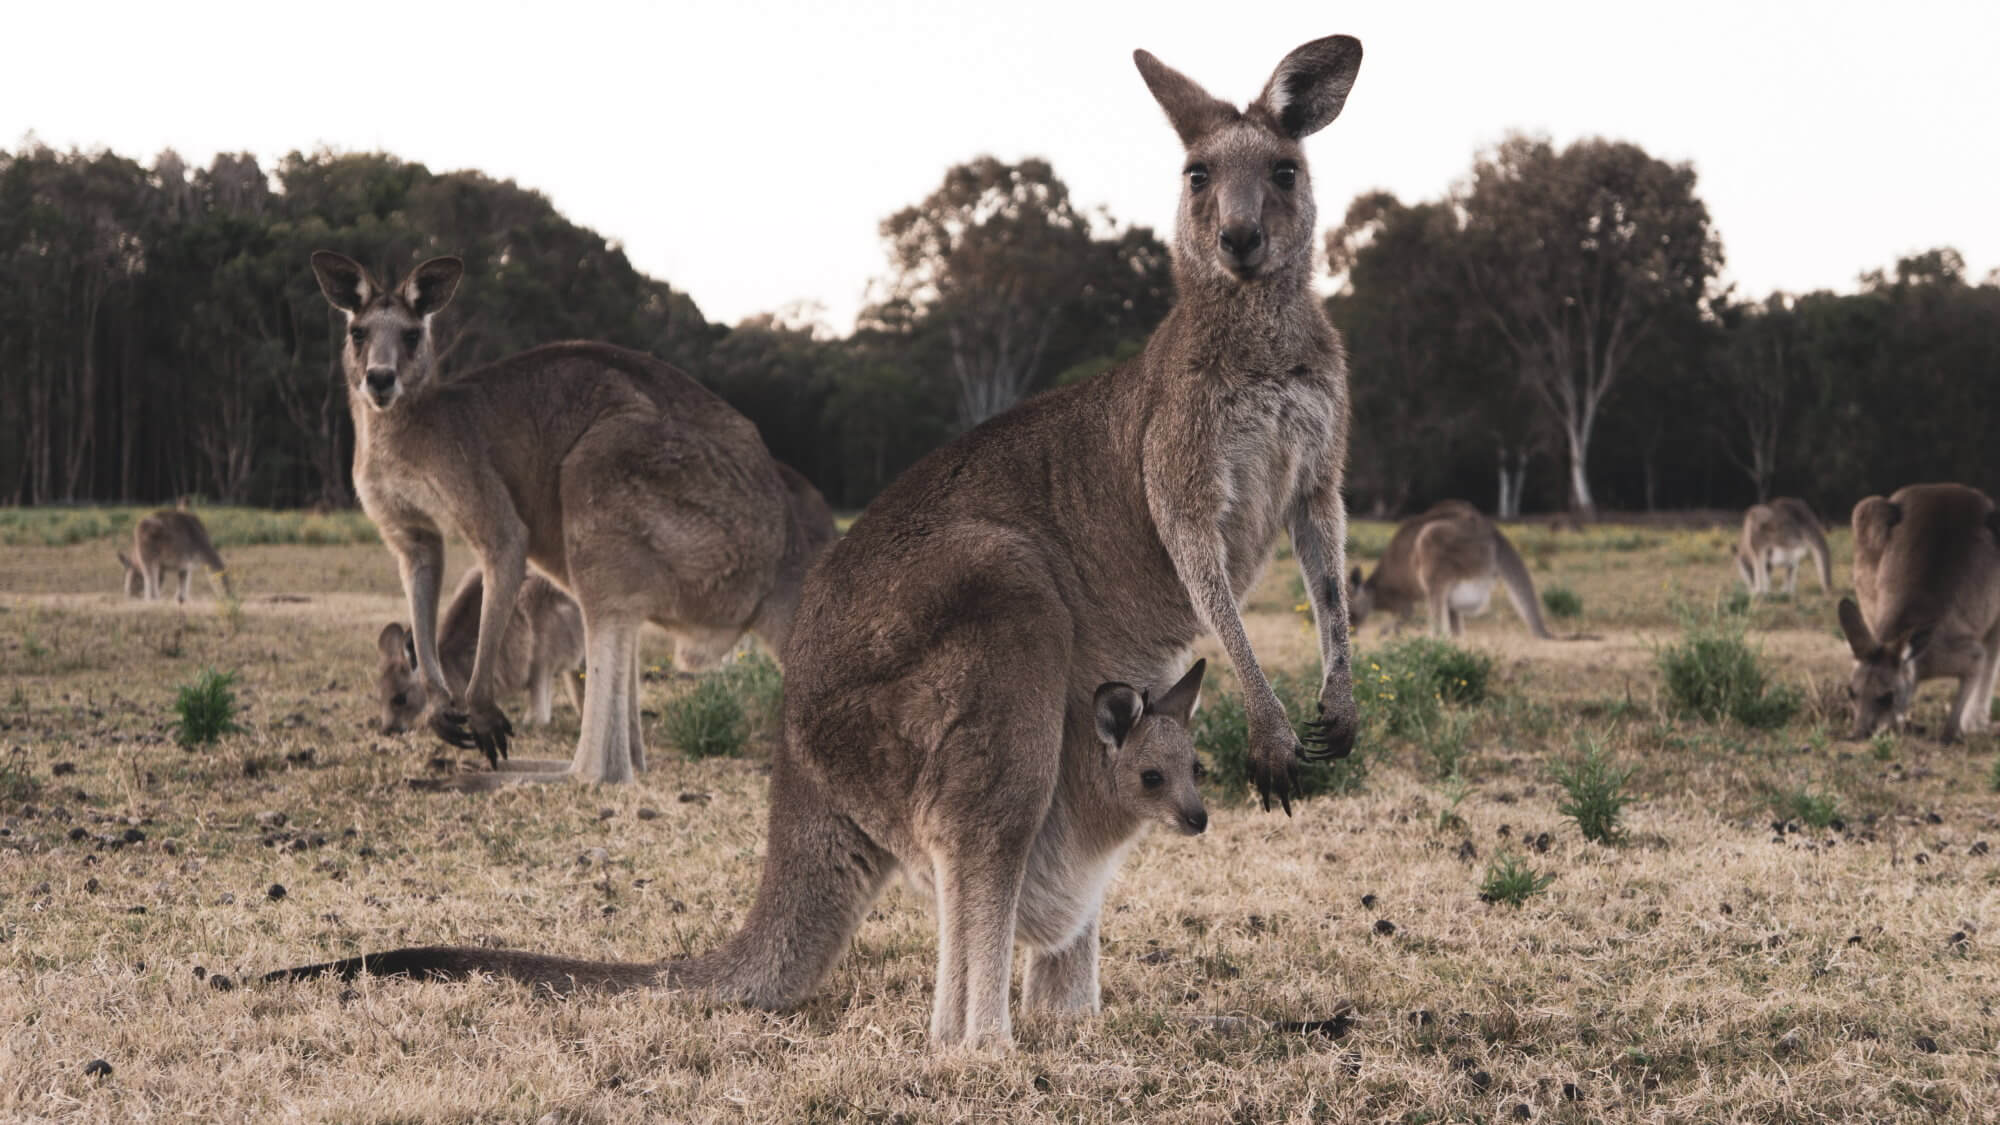 Lignede en kænguru, der bor i Australien for tusinder af år siden?